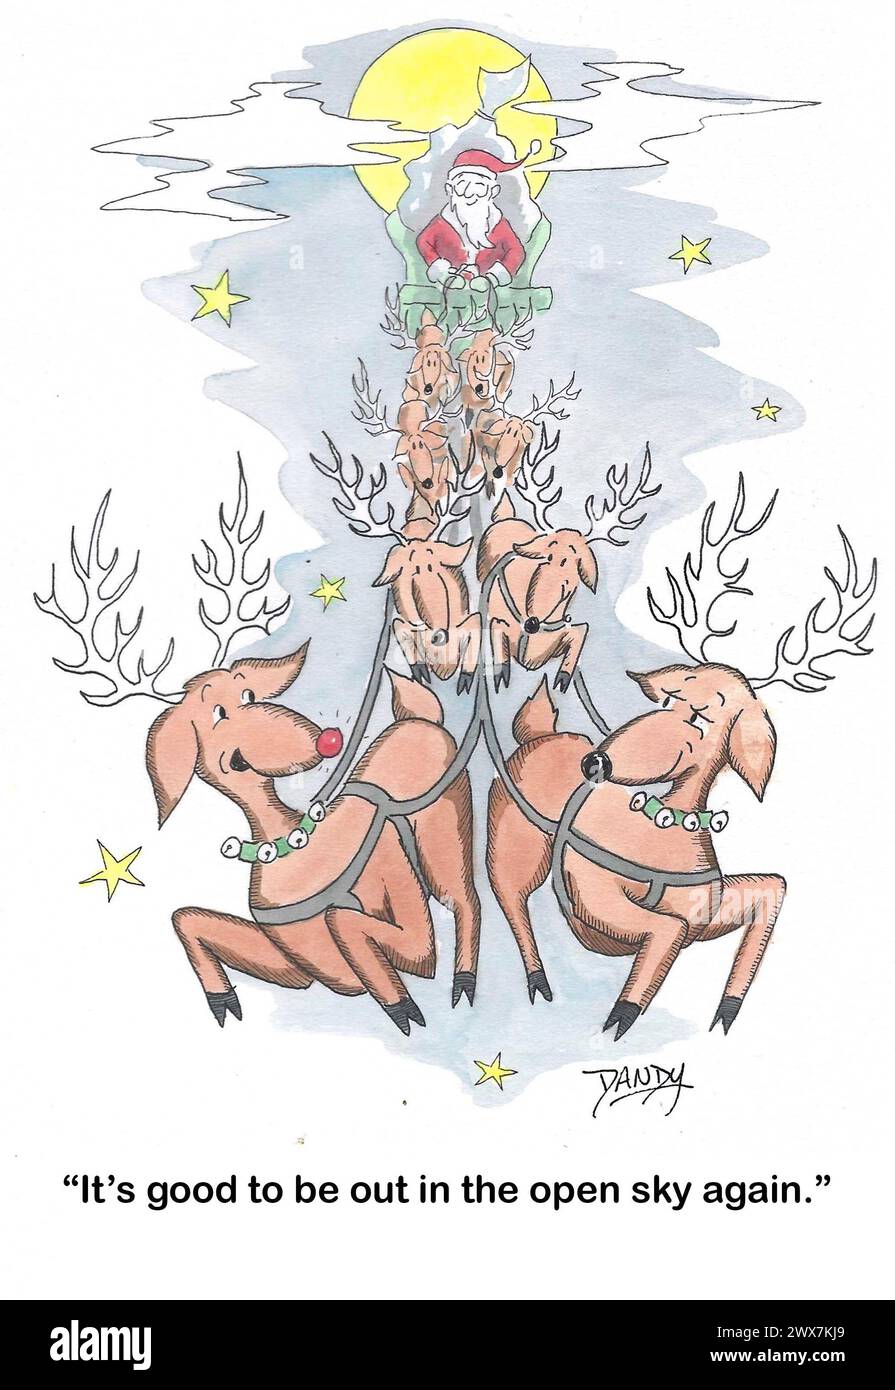 Farb-Cartoon von Santa's Rentieren, sie lieben den offenen Himmel. Stockfoto